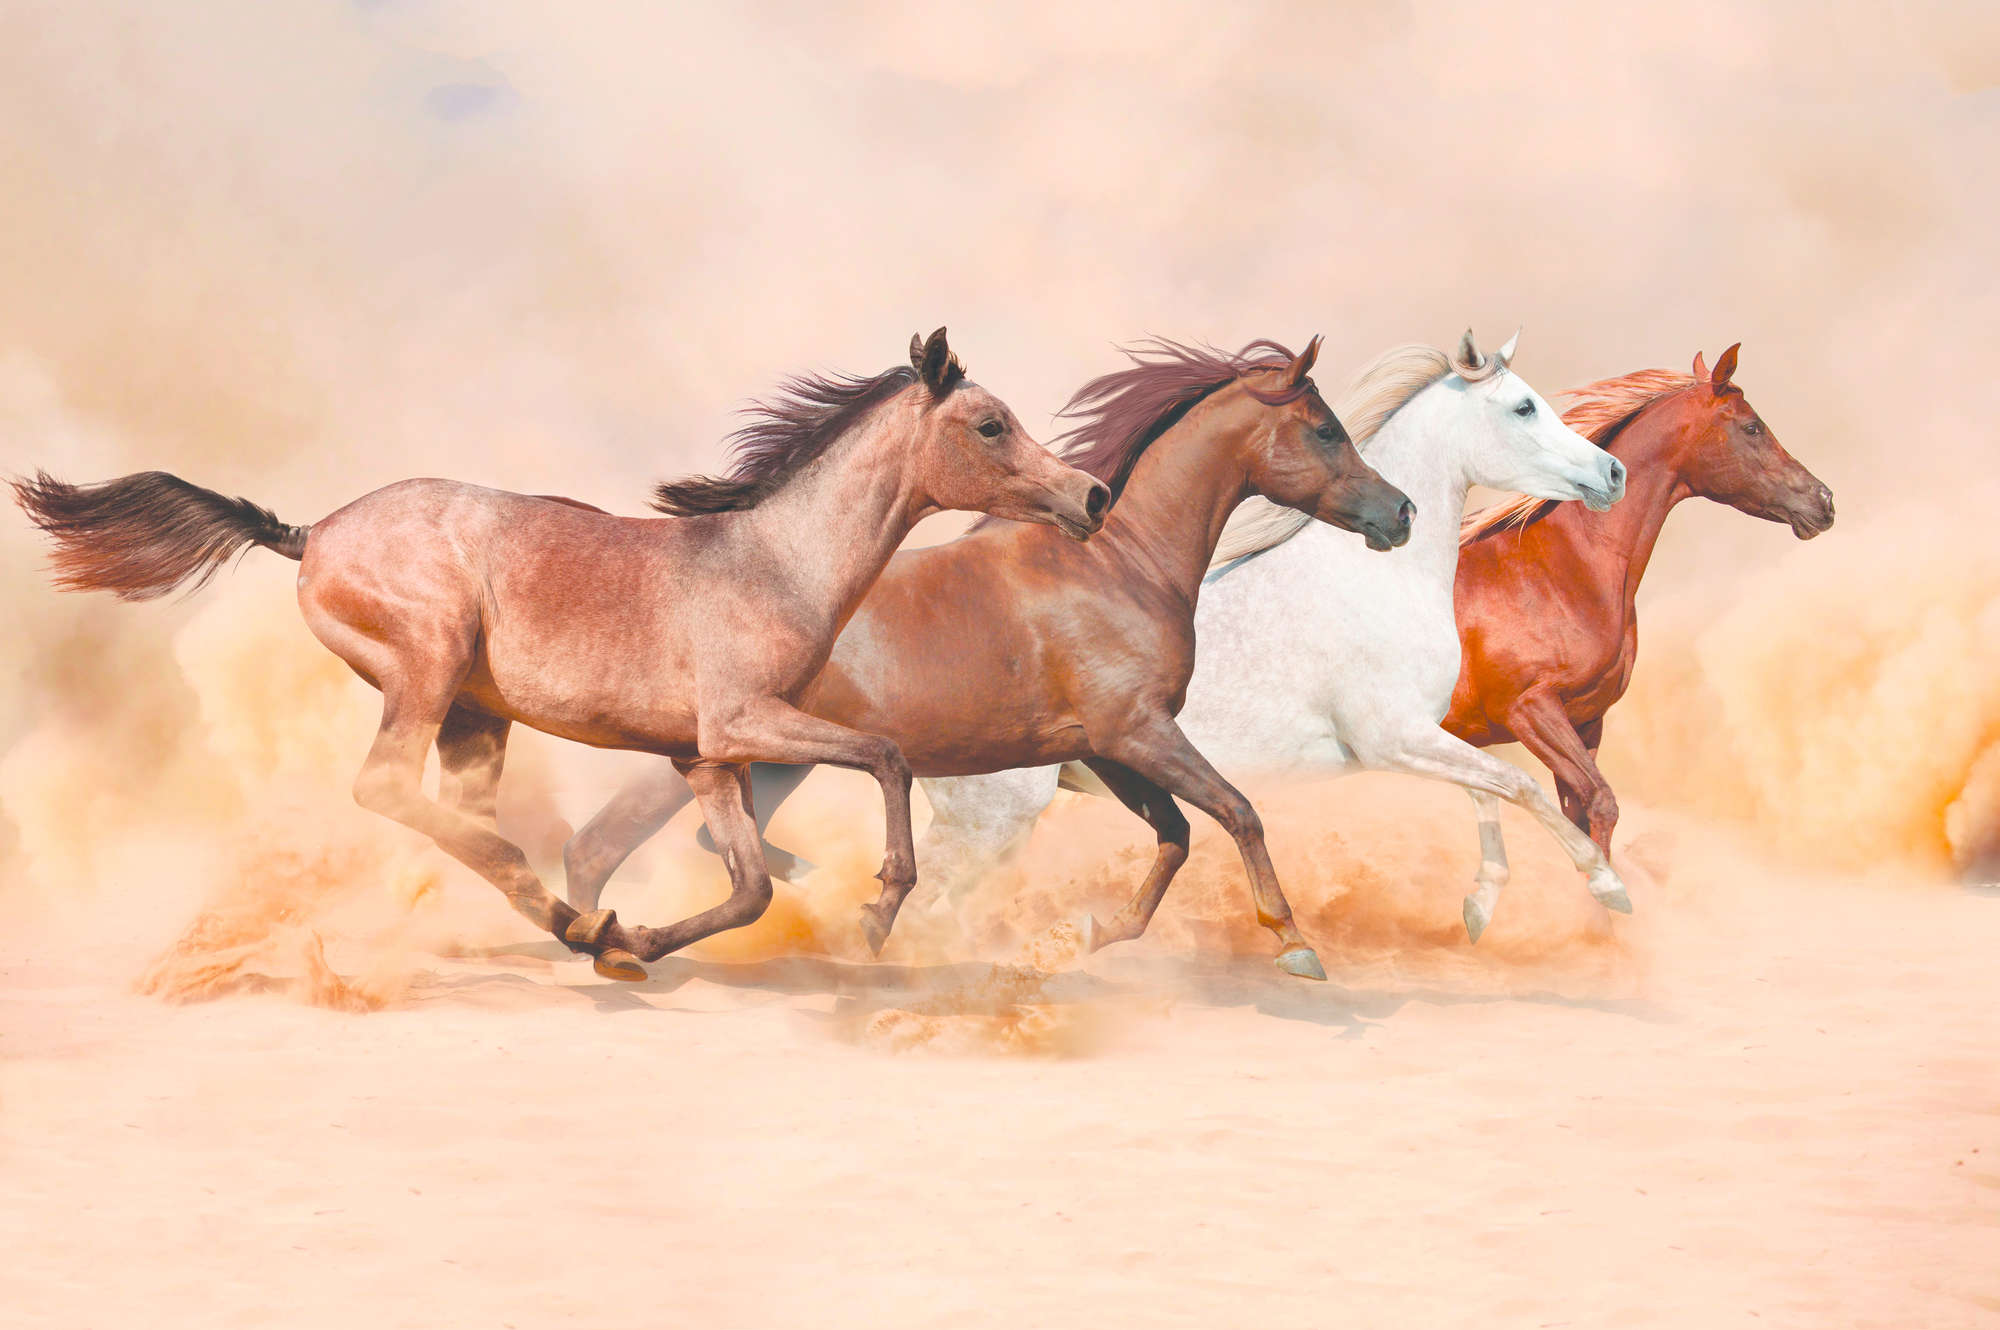             Papel pintado de caballo con rebaño galopante sobre vellón liso perlado
        